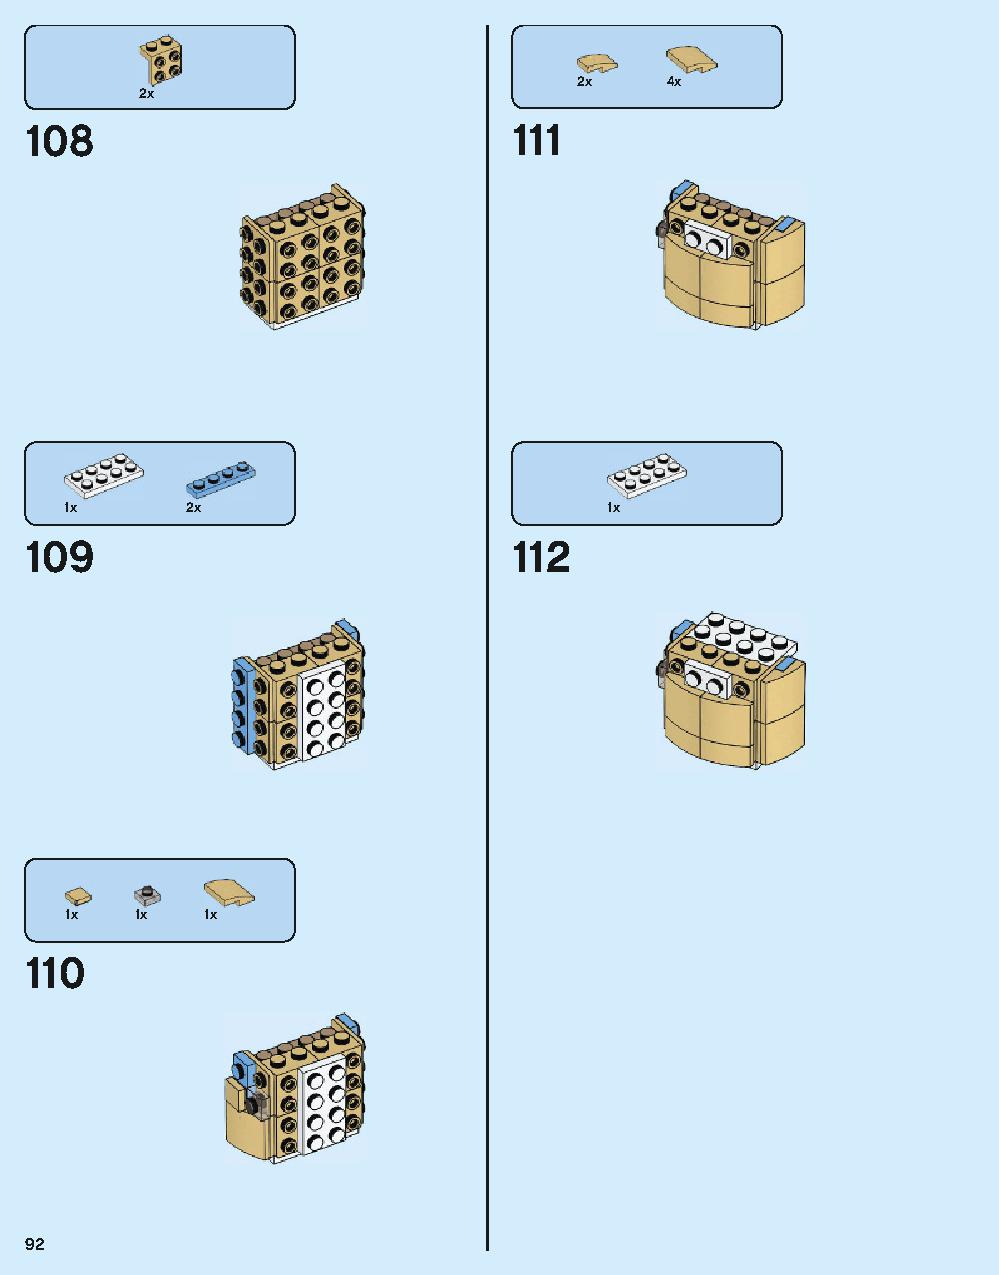 ホグワーツ城 71043 レゴの商品情報 レゴの説明書・組立方法 92 page